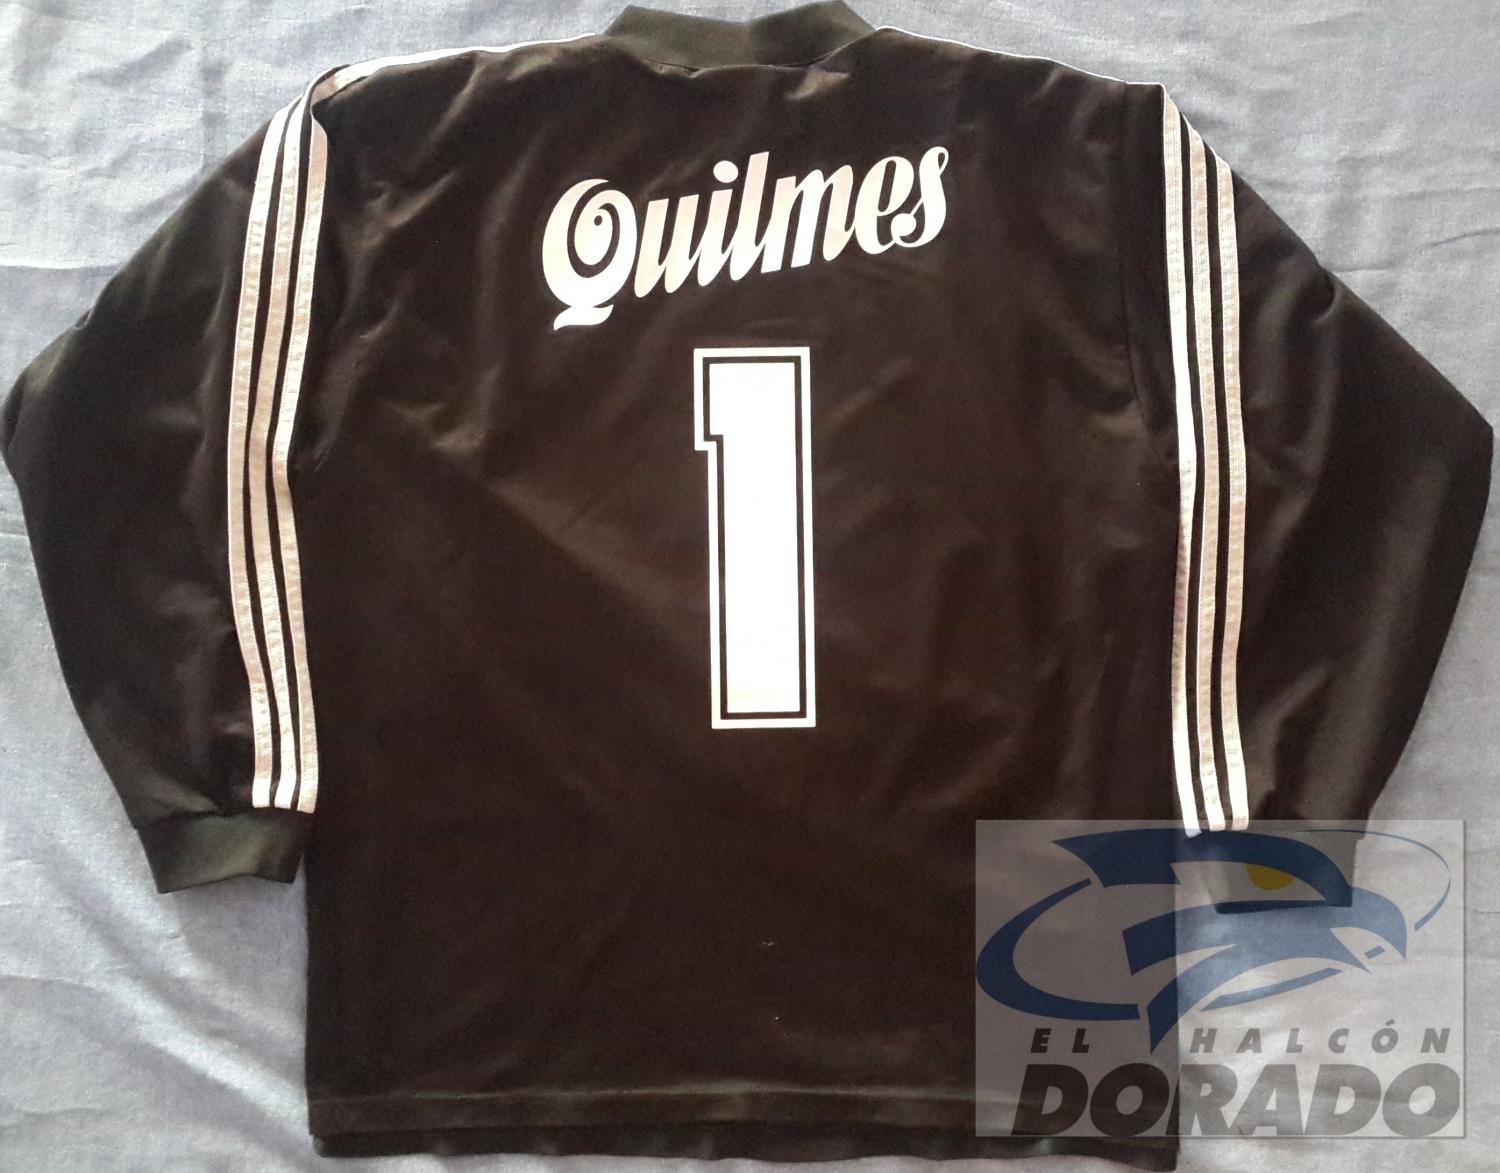 maillot de foot quilmes ac gardien 1996 pas cher